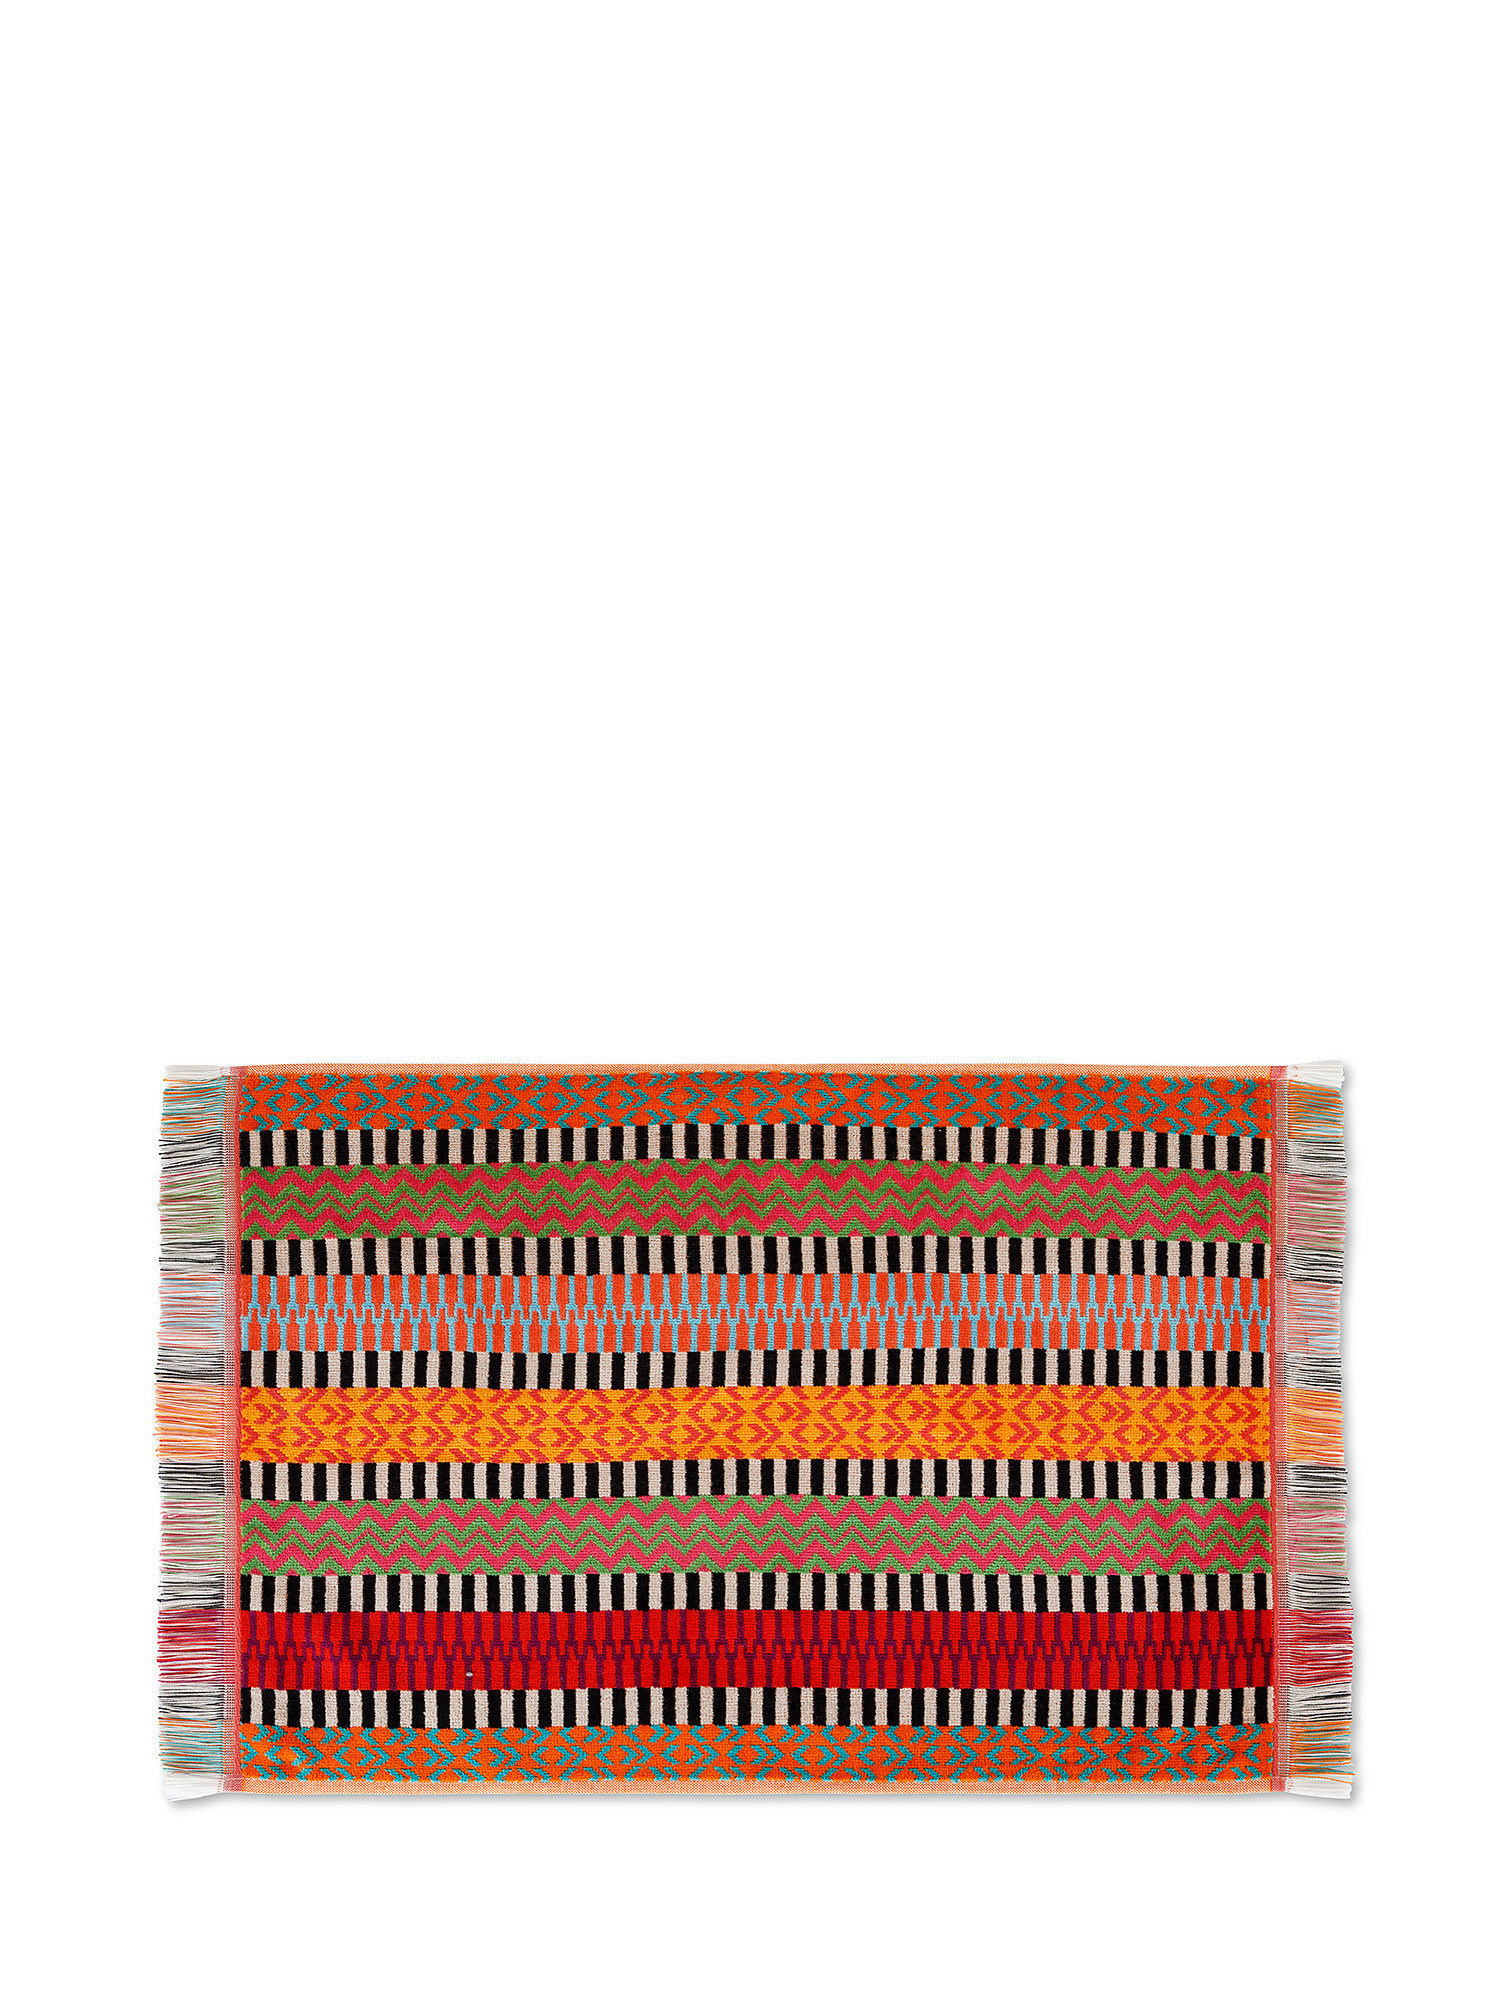 Asciugamano cotone velour motivo astratto, Multicolor, large